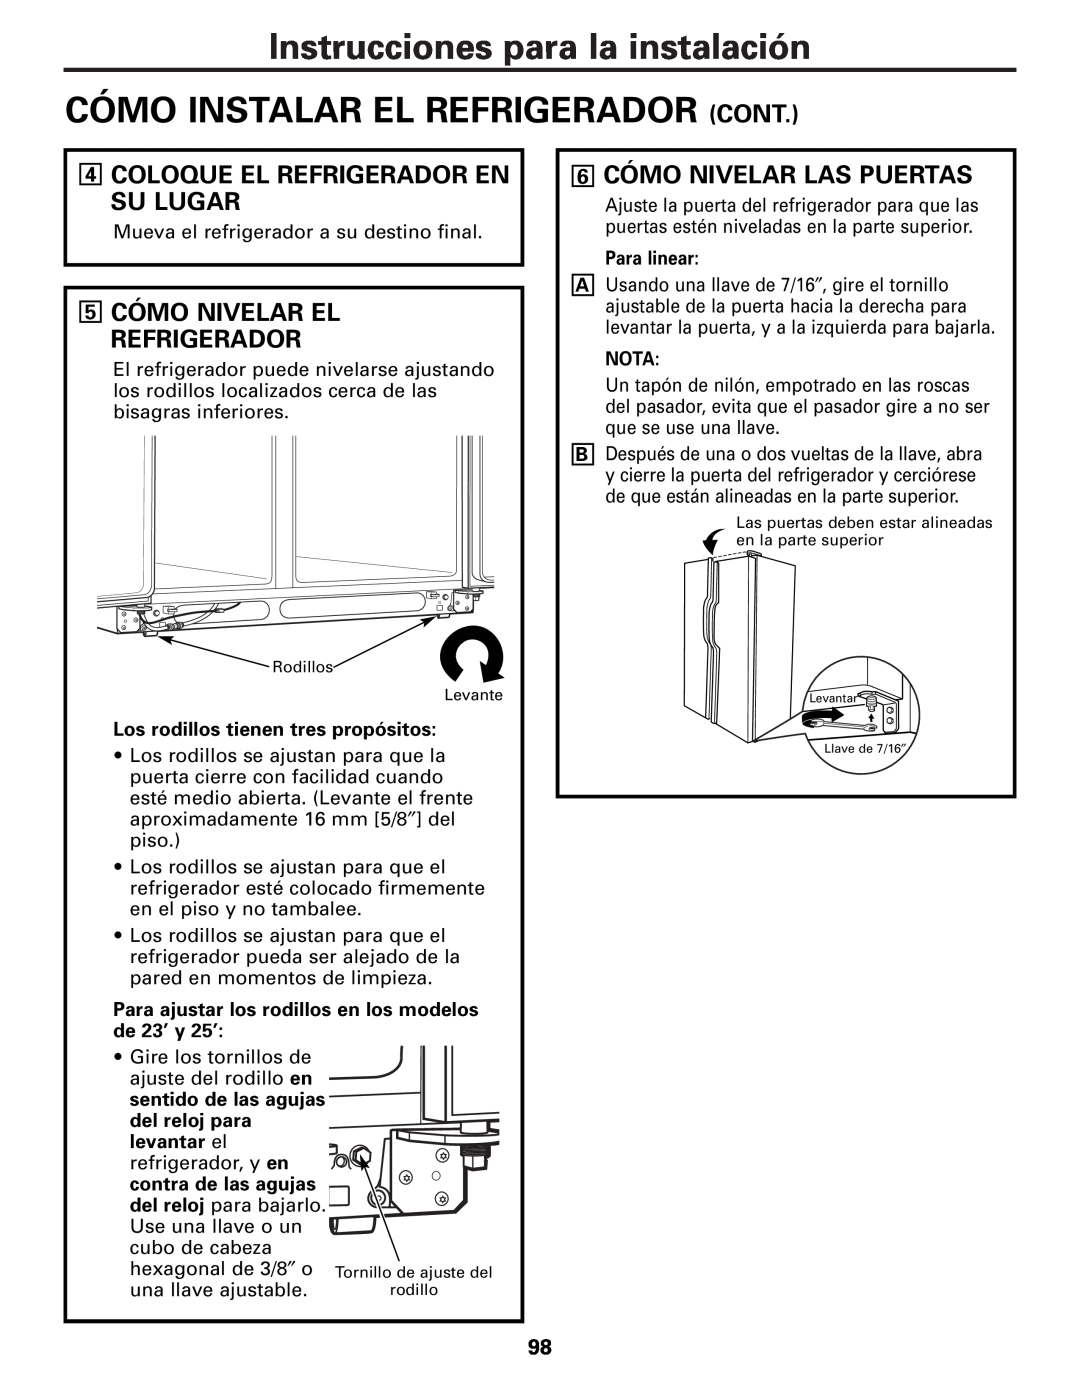 GE MODELS 23 AND 25 Instrucciones para la instalación CÓMO INSTALAR EL REFRIGERADOR CONT, 5 CÓMO NIVELAR EL REFRIGERADOR 